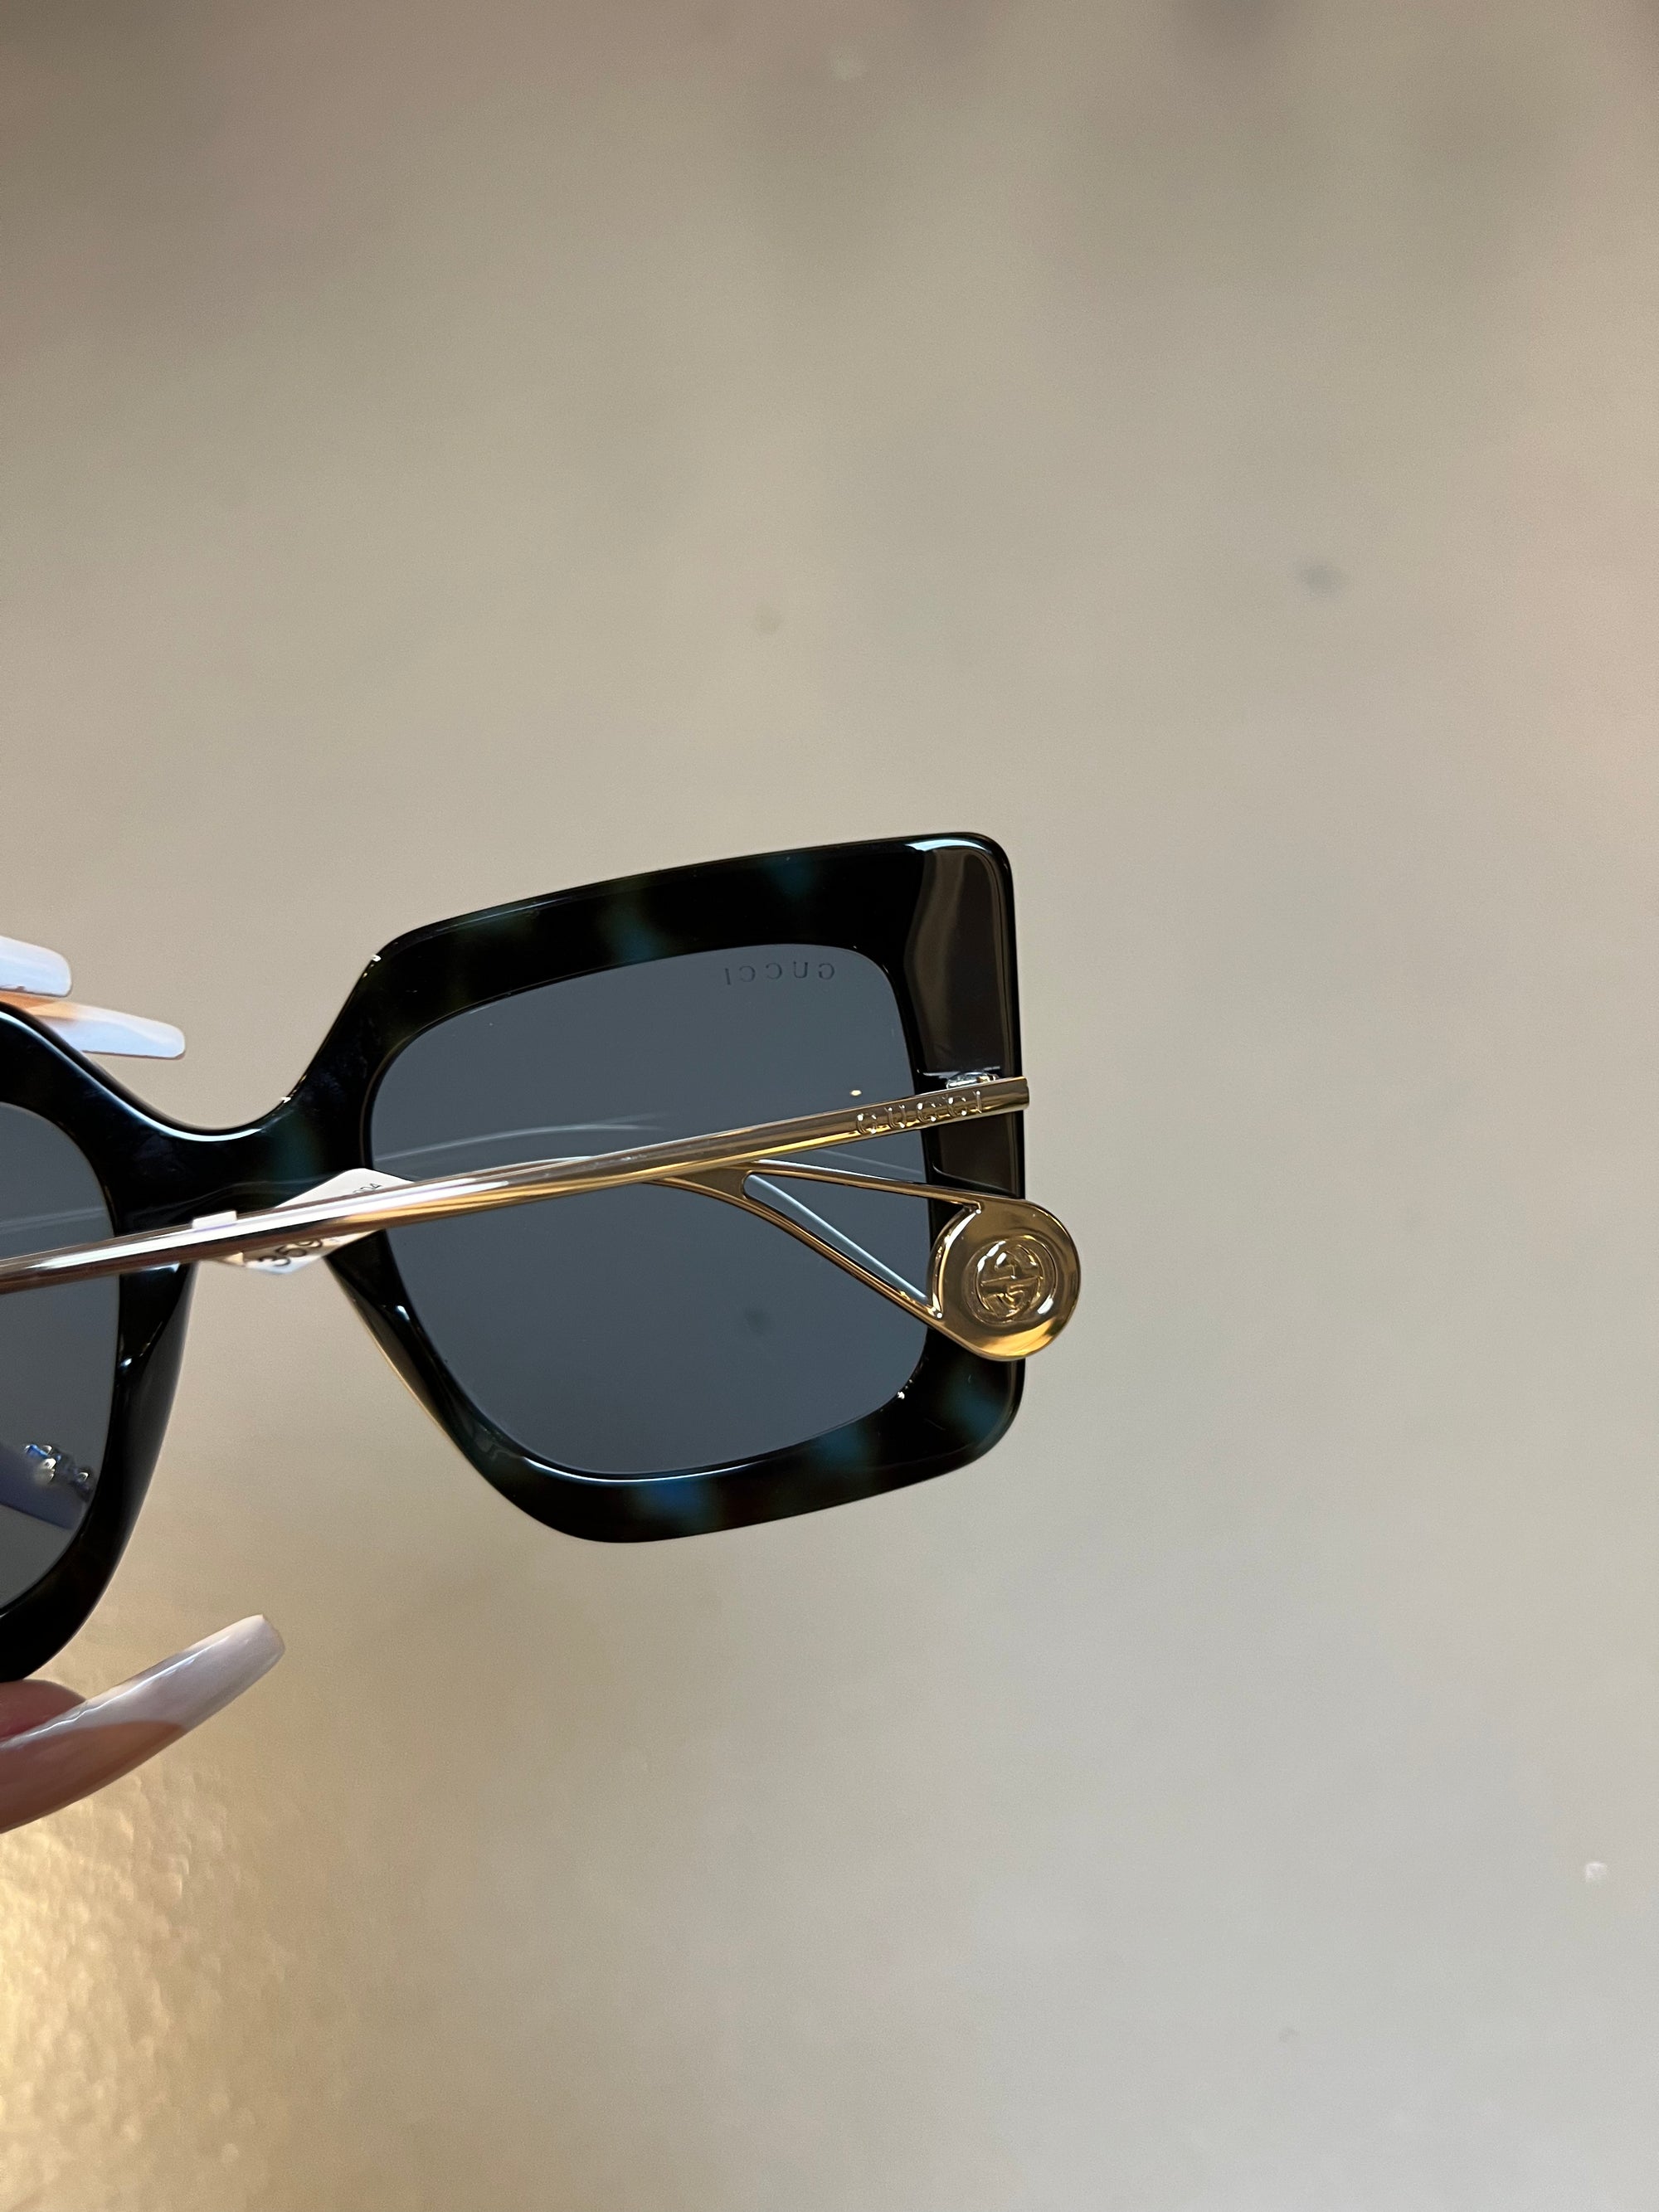 Produktbild der Gucci Sunglasses in Schwarz von vorne Detail des Logos.